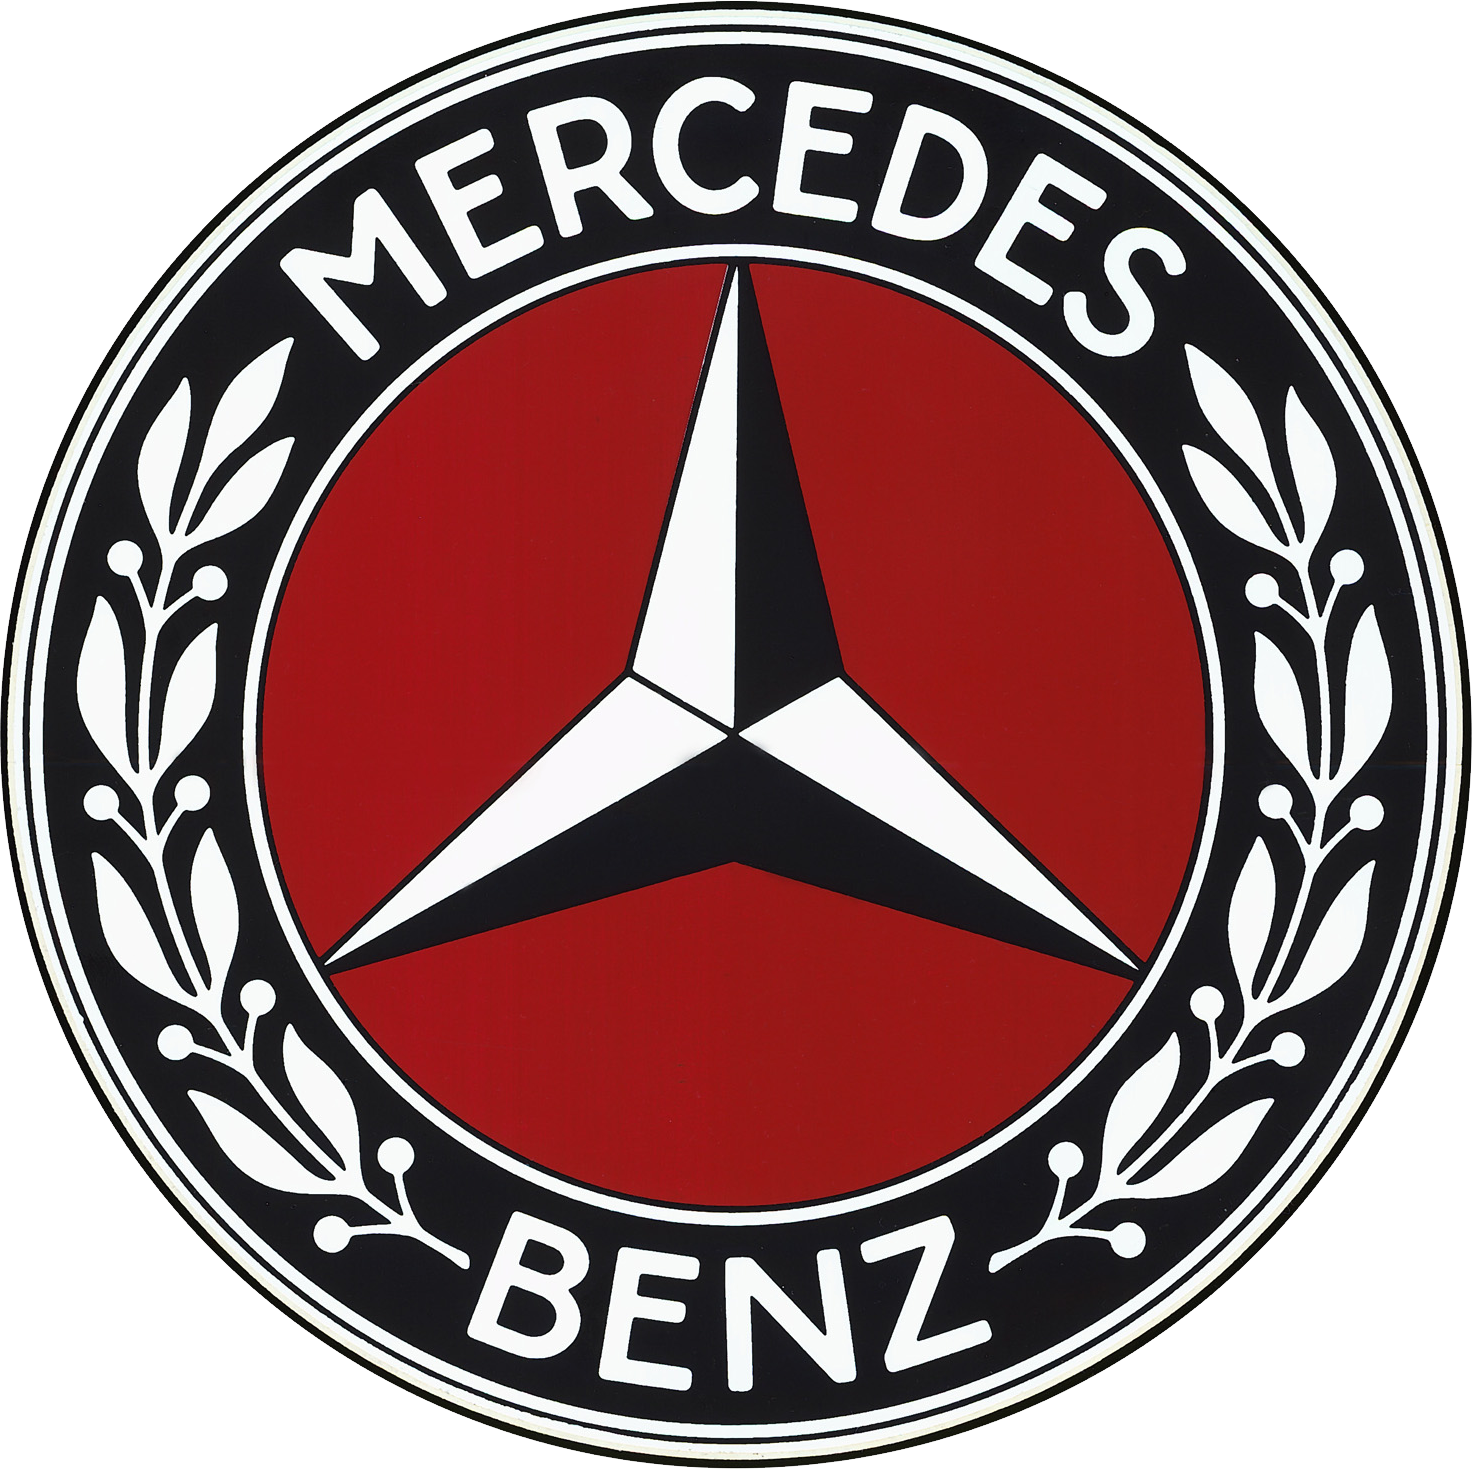 โลโก้ Mercedes Benz